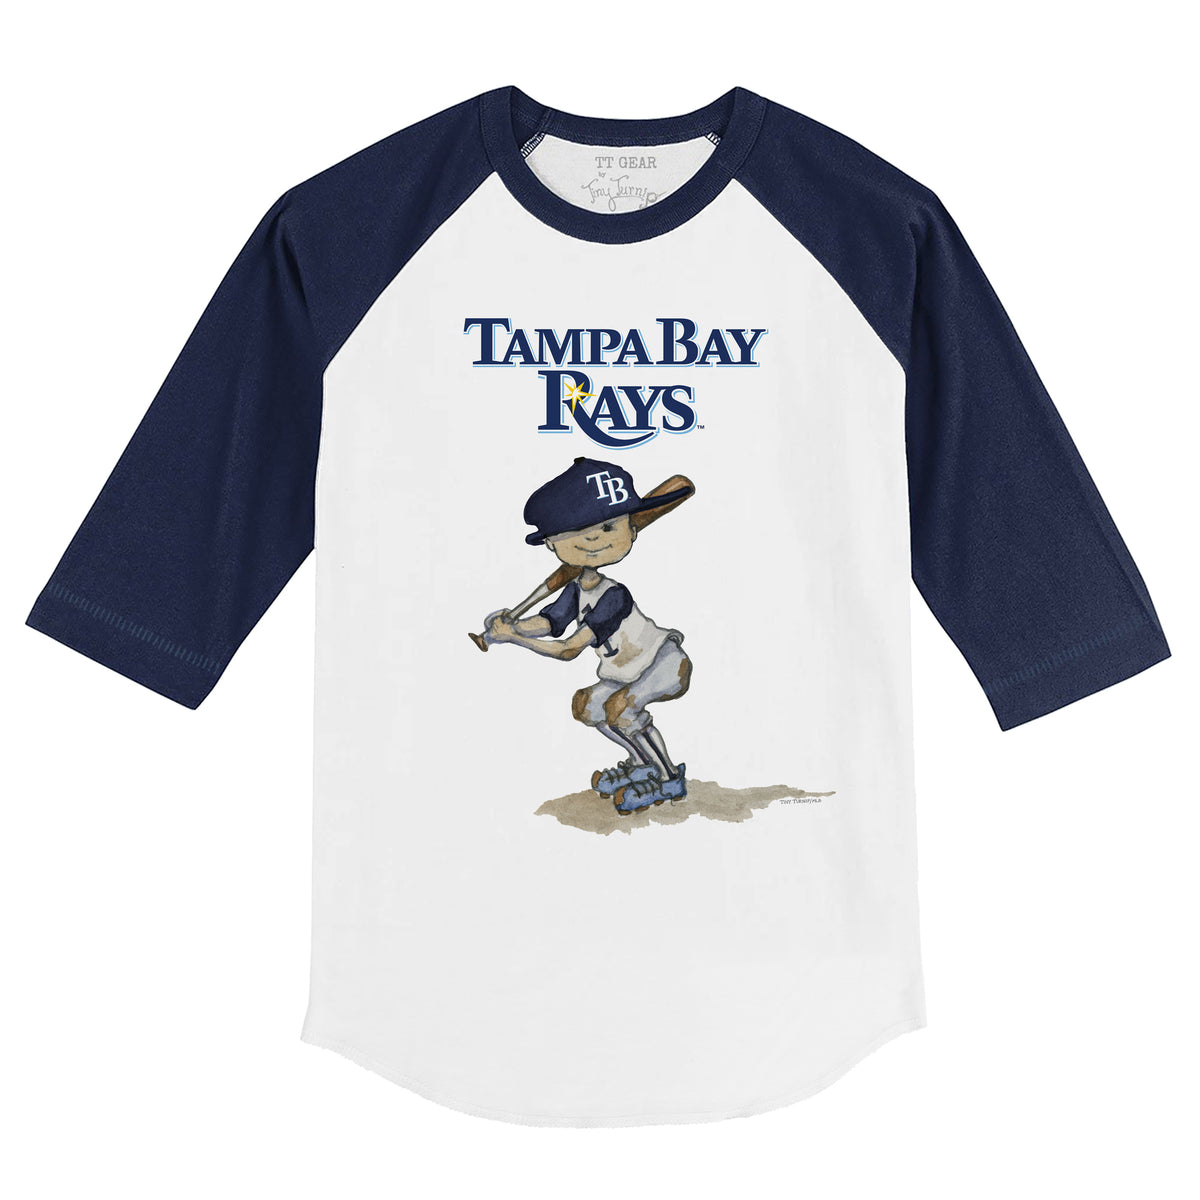 Tiny Turnip Tampa Bay Rays Baseball Love Tee Shirt Women's 2XL / White